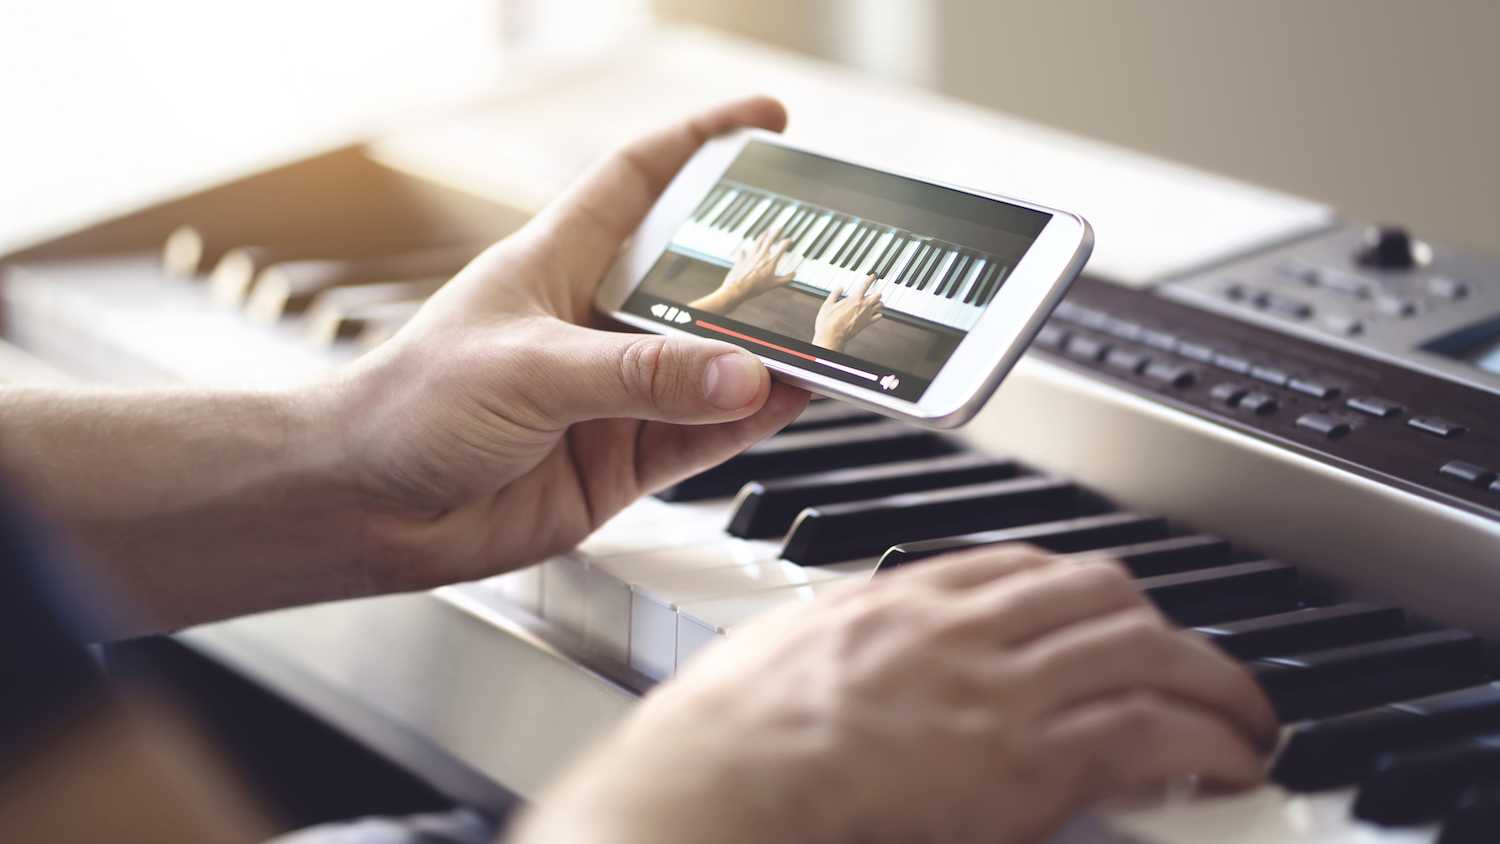 Tập piano với app và thiết bị hỗ trợ là tốt nhất dành cho người tự học